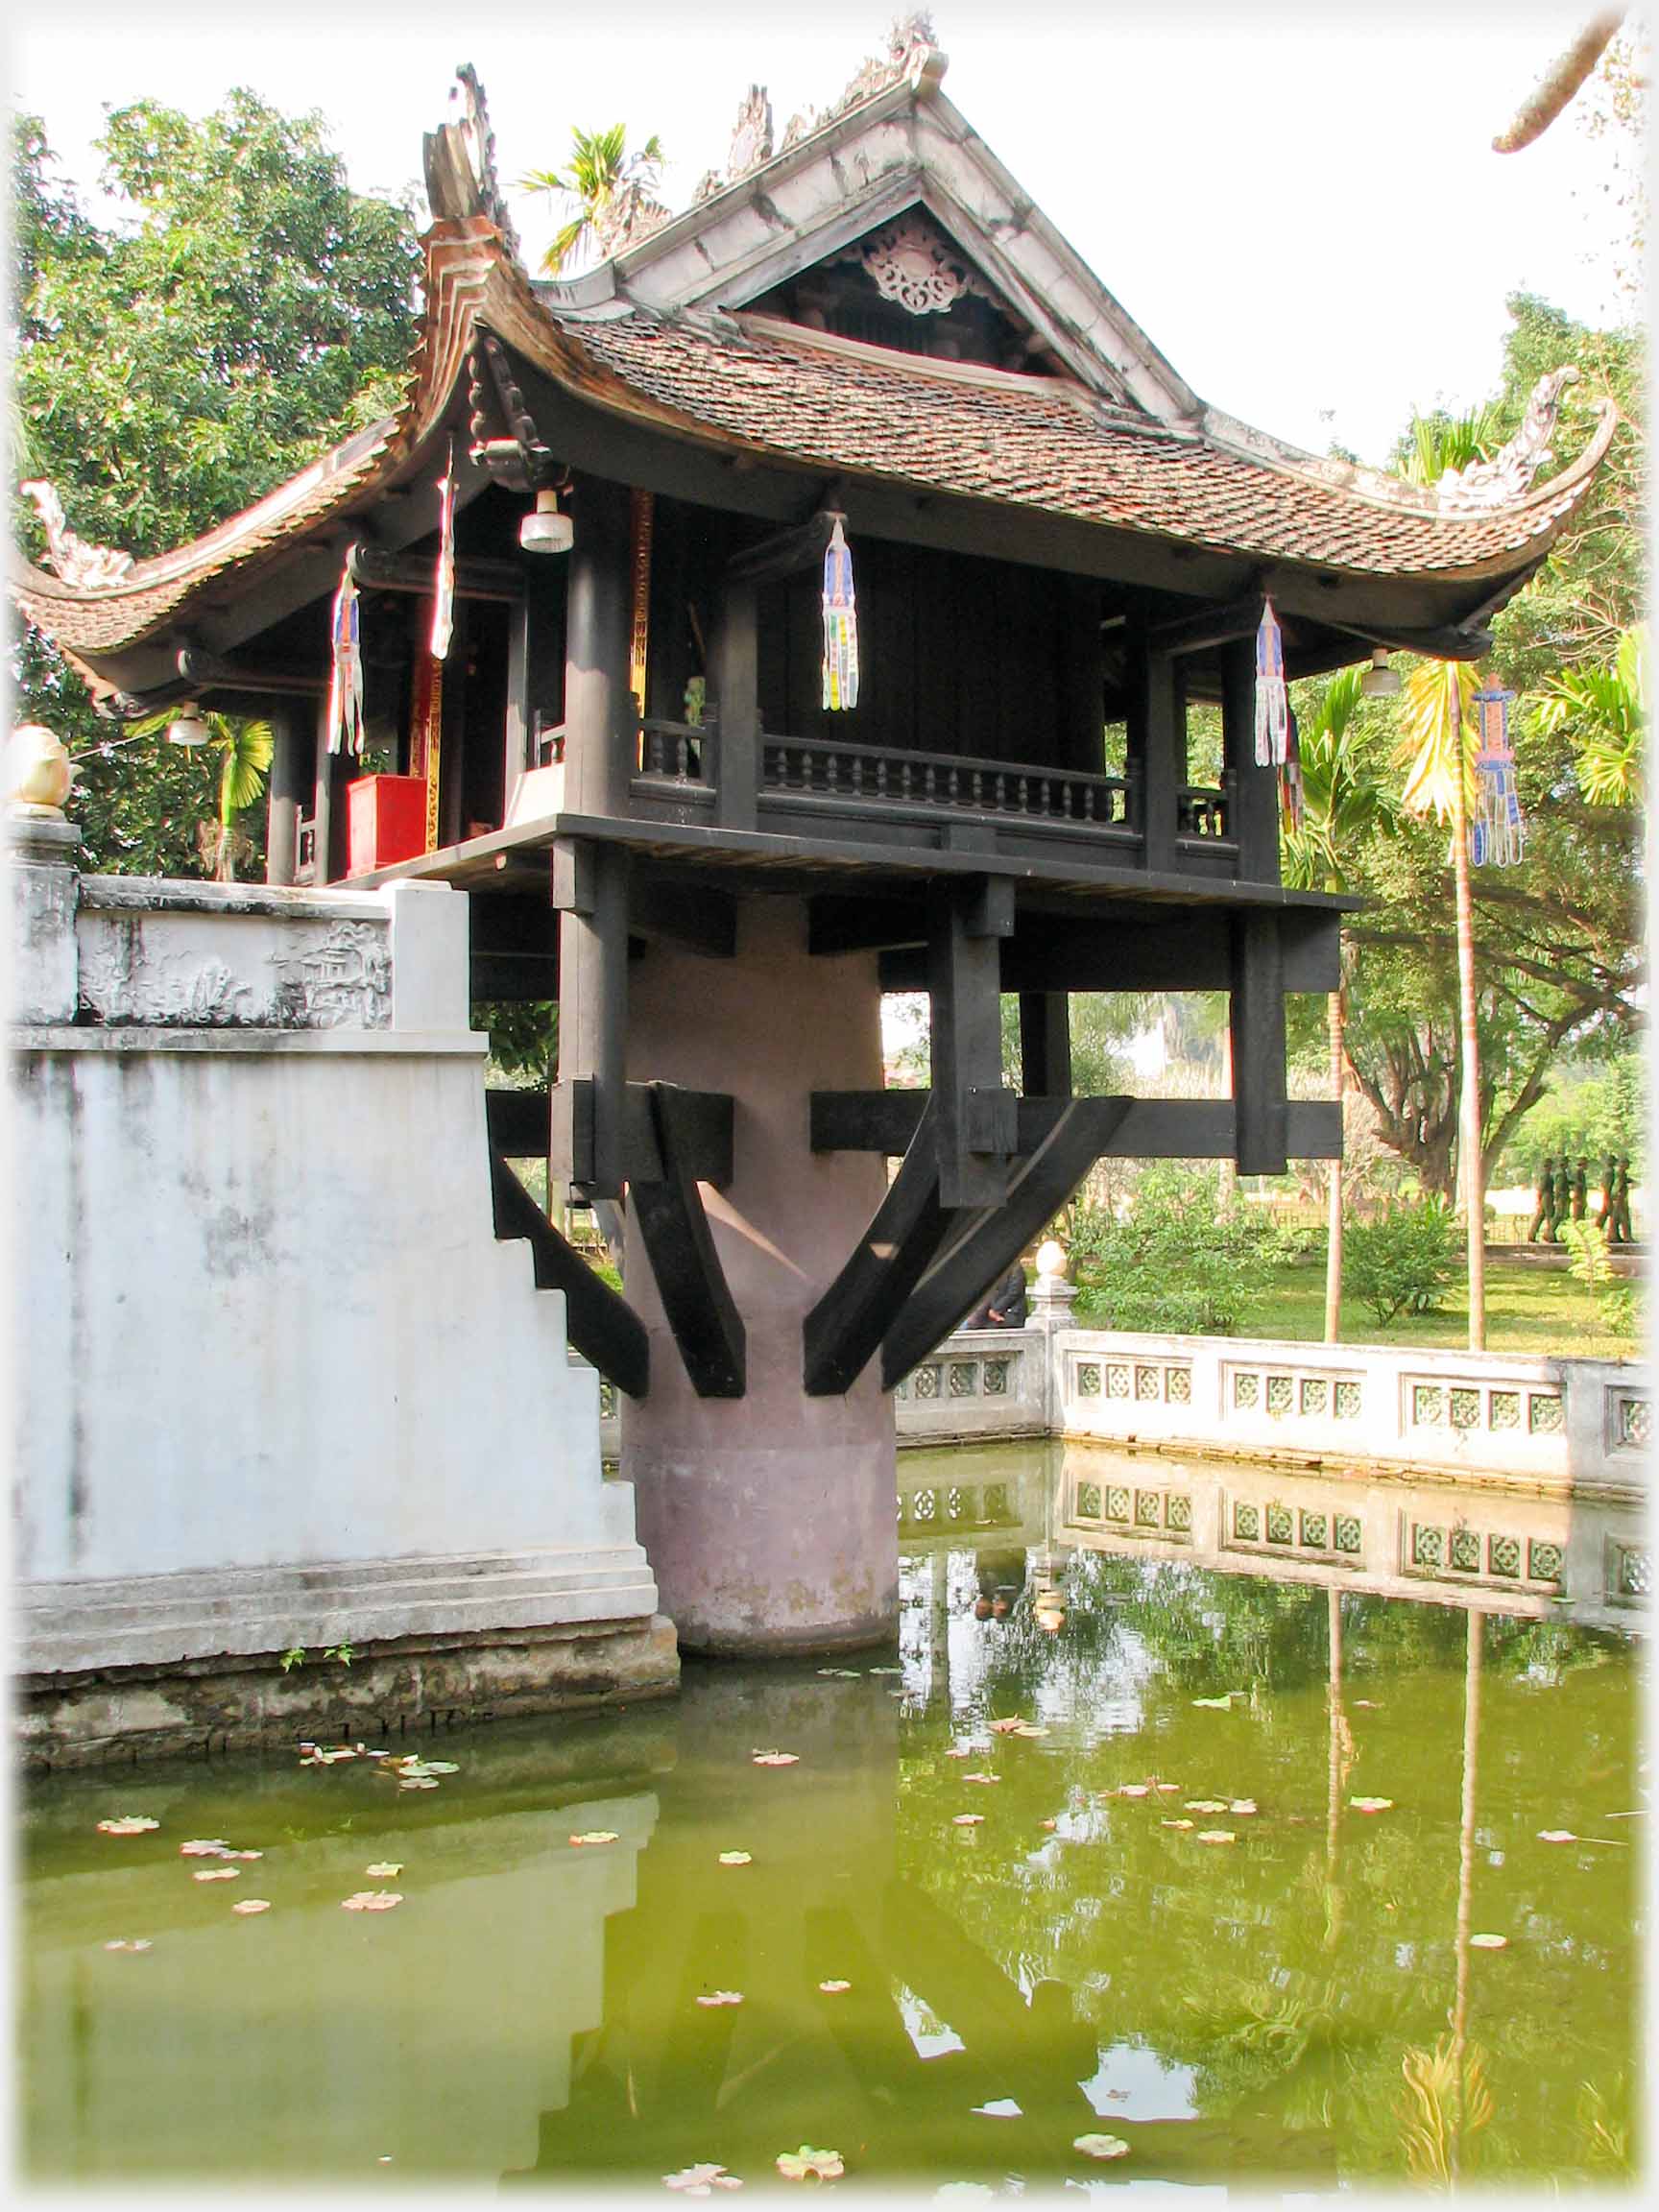 Angled view of pagoda and steps.